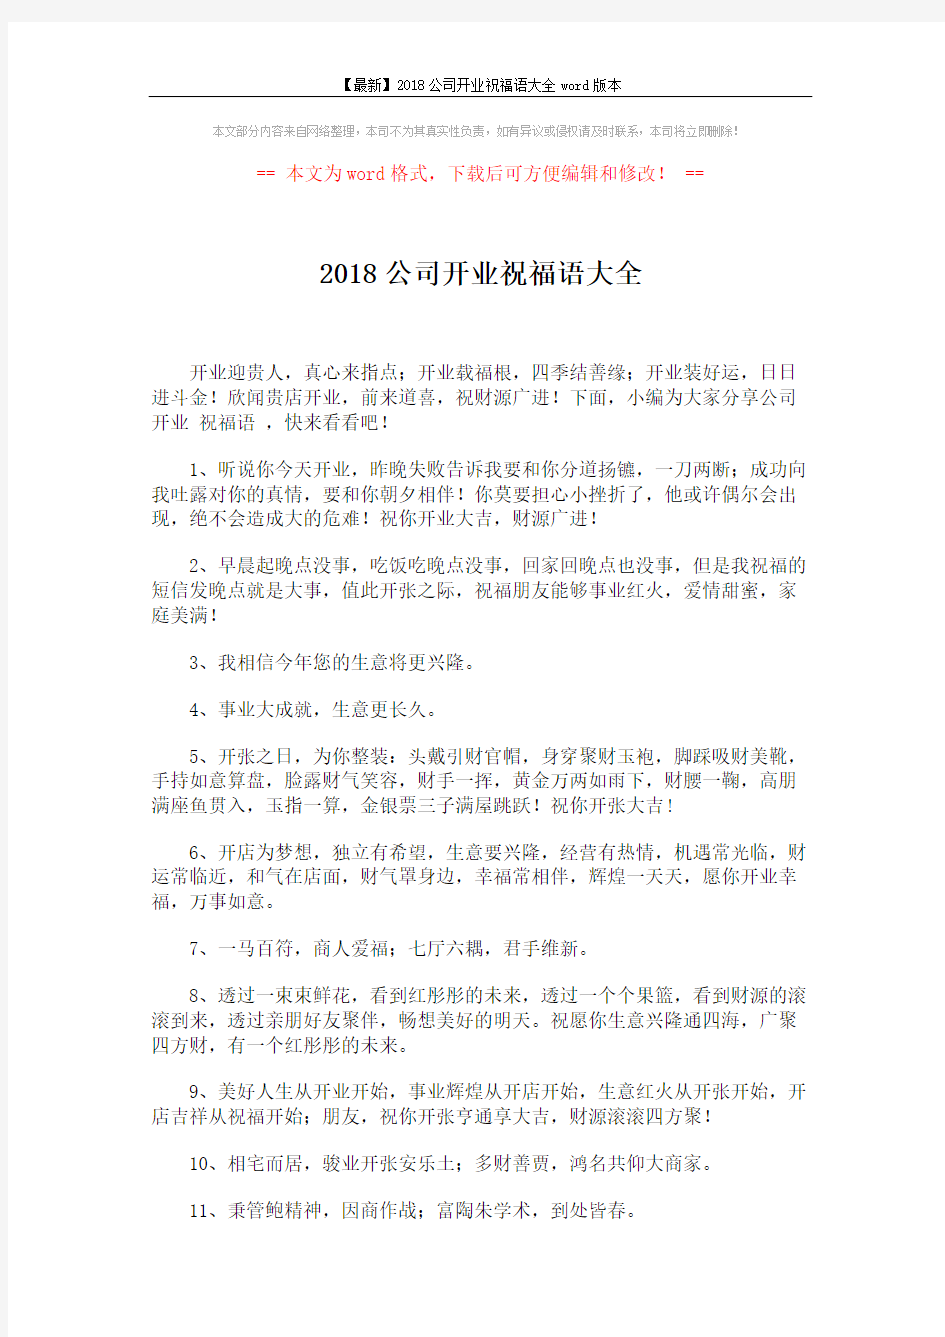 2018公司开业祝福语大全 (7页)